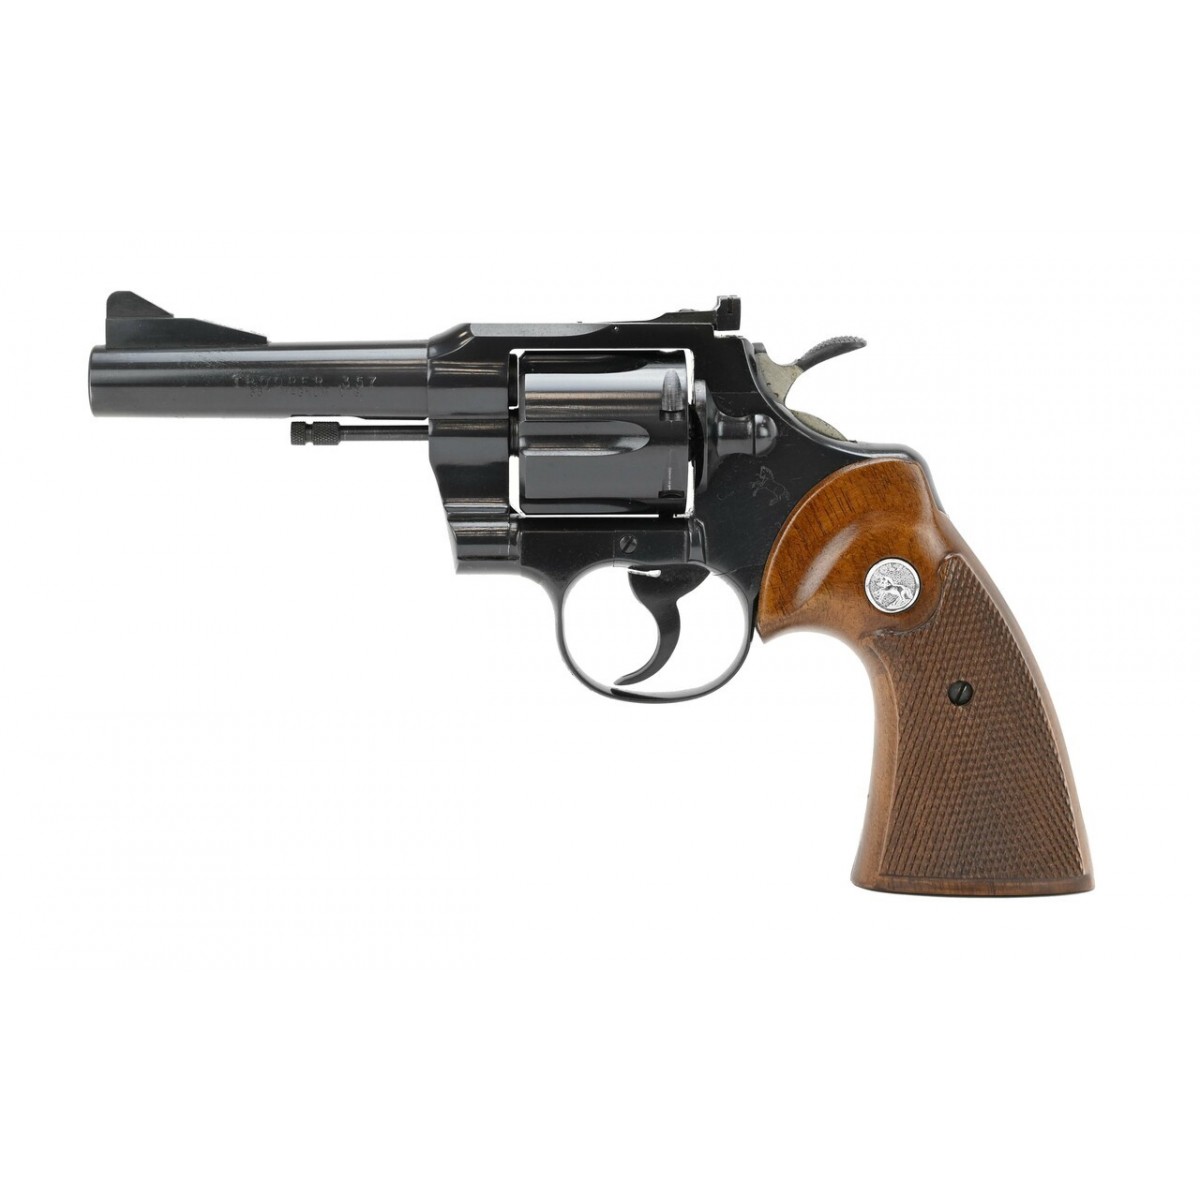 Colt Trooper 357 Magnum caliber revolver for sale